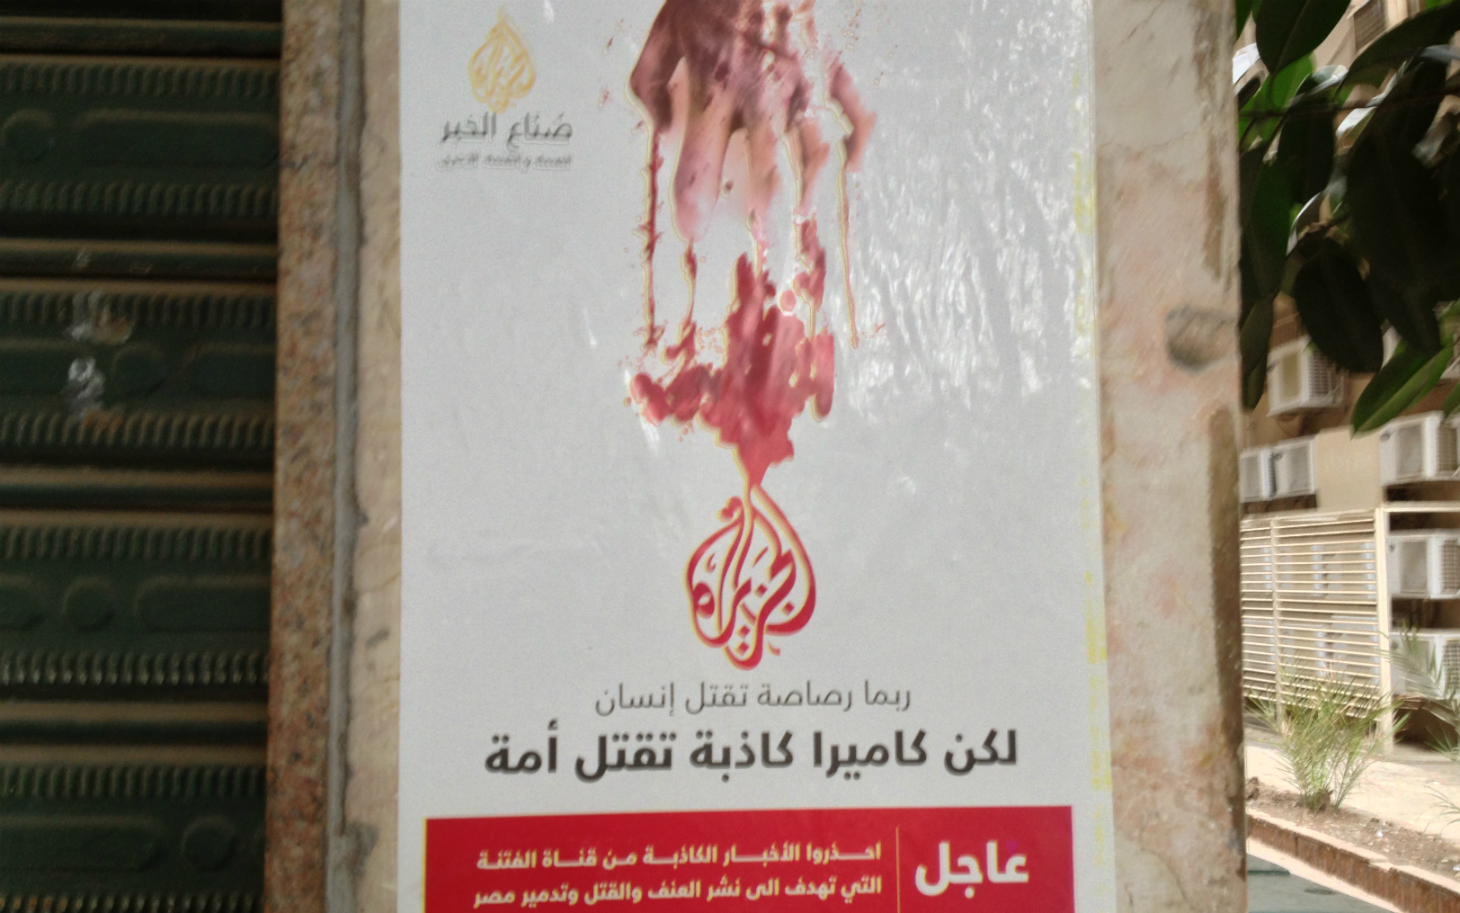 Anti-Al Jazeera poster.